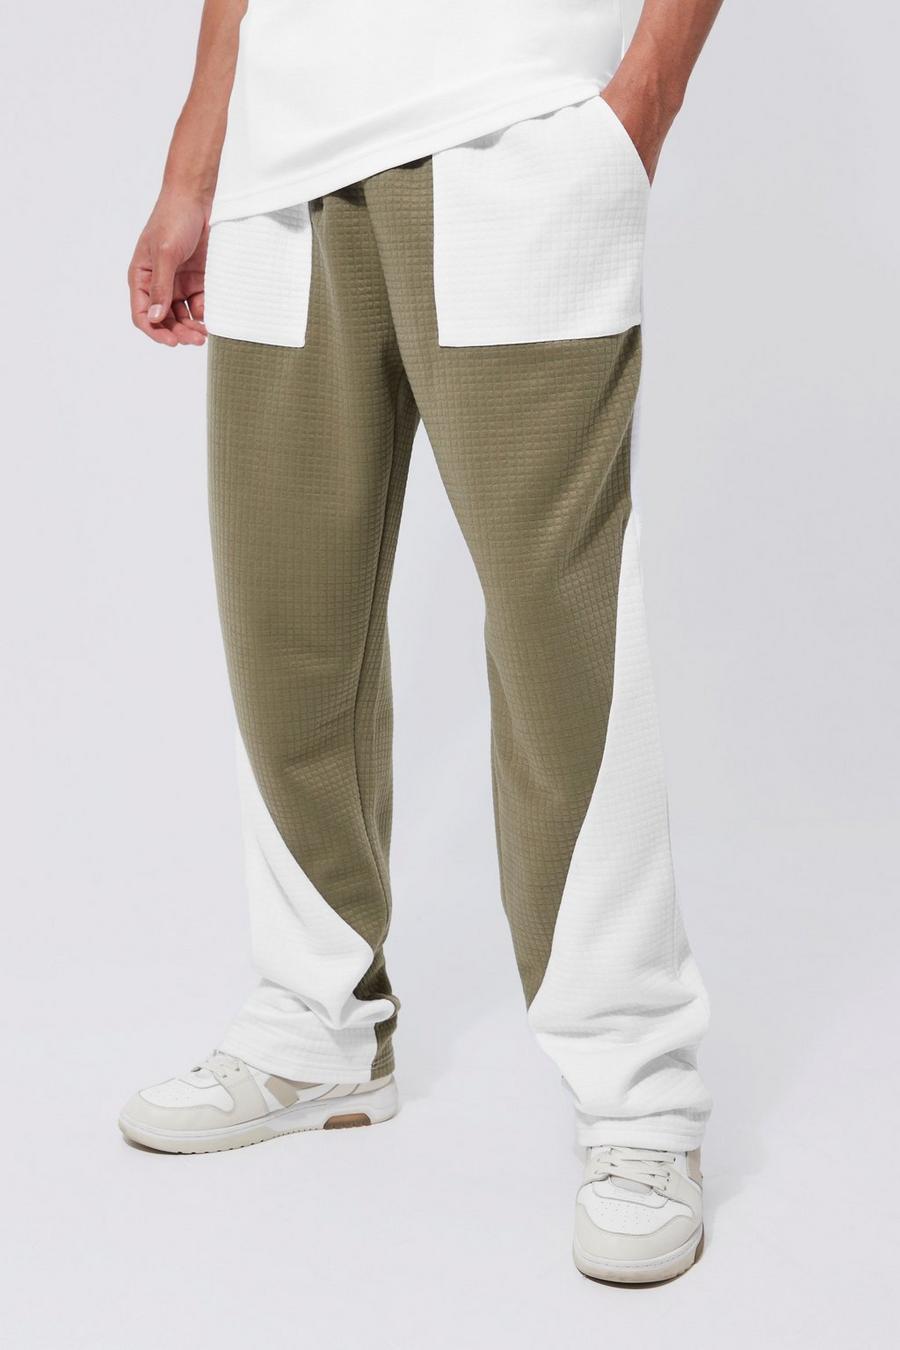 Pantalón deportivo Tall recto de tejido gofre con colores en bloque, Khaki